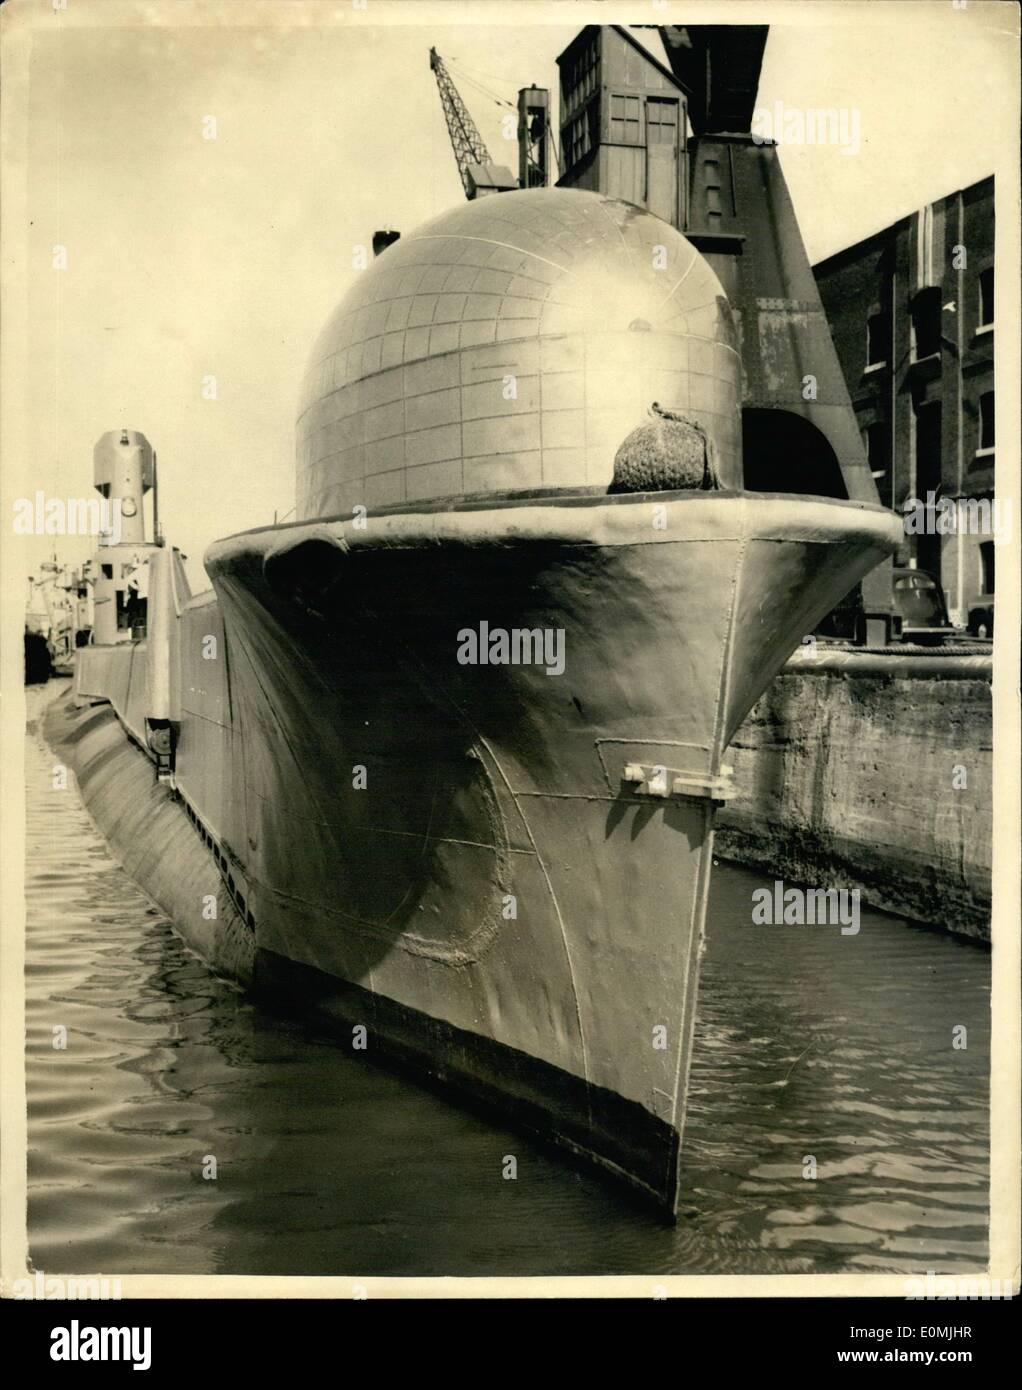 06 juin 1955 - le R.N. Expérimental Submarine vient à Londres étrange Dome sur les Blows. H.N.E. Thermopyle commandé par Lieut. Commandant W.D. Scott R.N. est maintenant en visite à Londres et devait être vu à East India Dock cet après-midi. Elle a été construite à Chatham en 1945 et a été moderniédentée et est maintenant utilisée principalement à des fins expérimentales. Elle a été profilée et a également été équipée d'un étrange dôme sur les arcs. Cette après-midi, des photos montrent la tête de l'artisanat sur les quais de l'Inde orientale, montrant le dôme inhabituel sur ses arcs. Banque D'Images